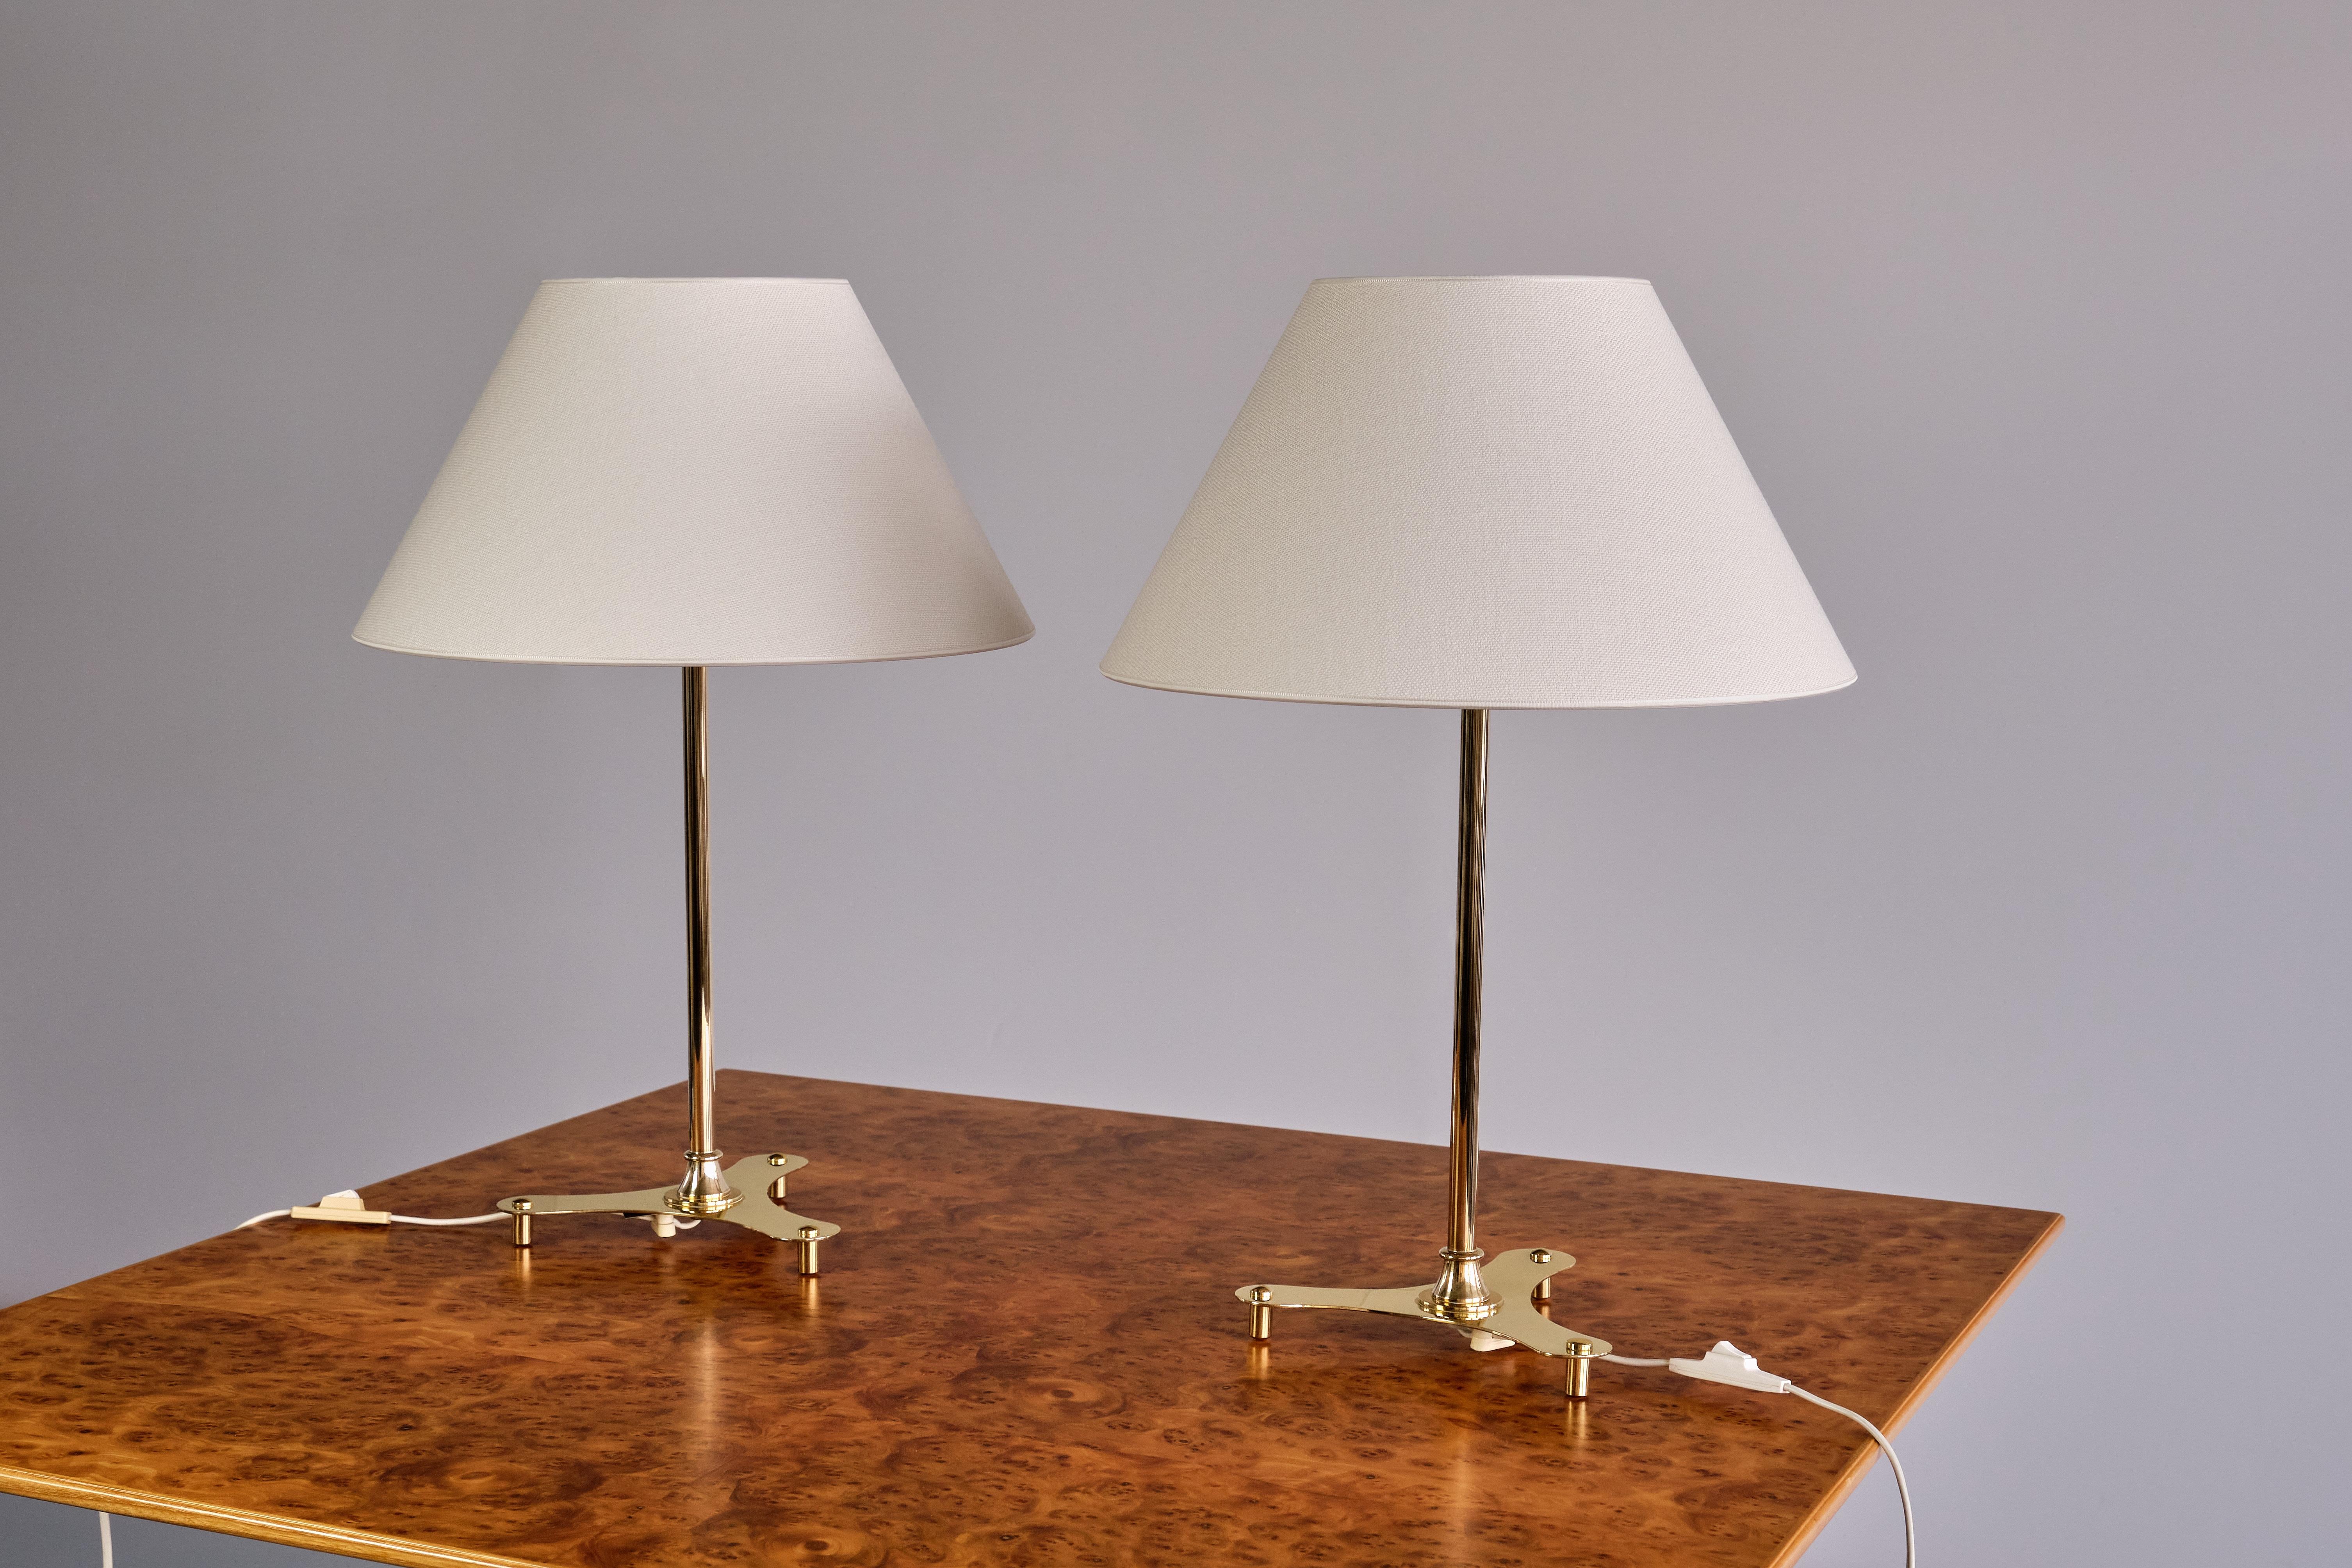 Dieses seltene Paar Tischlampen wurde von Josef Frank entworfen und in den 1950er Jahren von Svenskt Tenn in Schweden hergestellt. Die Lampen sind auf der Unterseite des Sockels mit der Modellnummer 2467/2 gekennzeichnet. Dieses Modell wird nicht